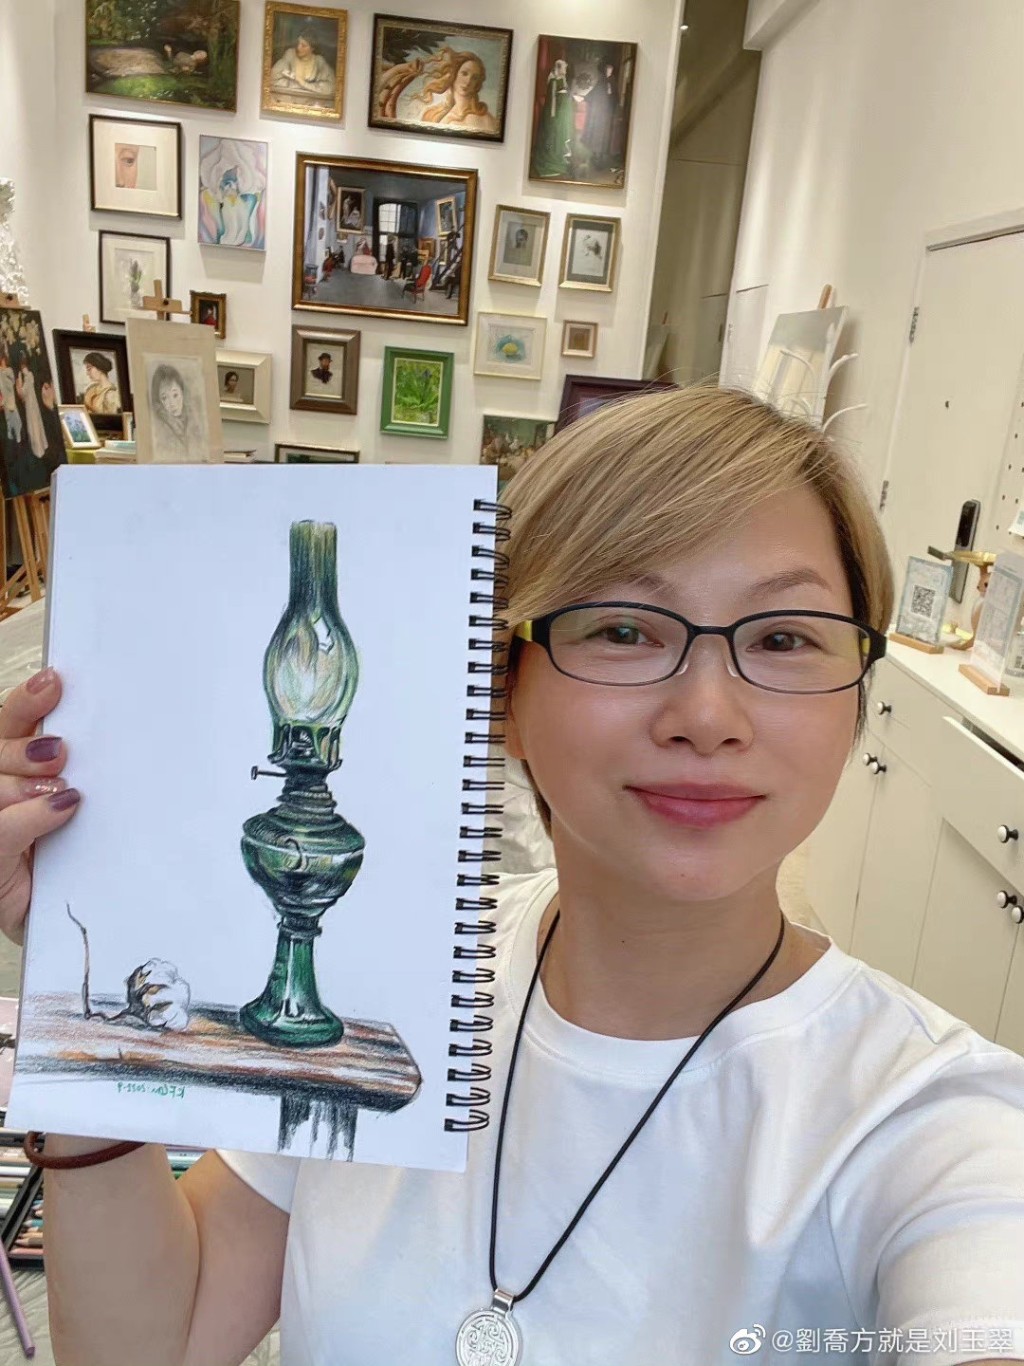 劉玉翠近年愛上繪畫，不時在社交網分享畫作，畫功亦相當不錯。